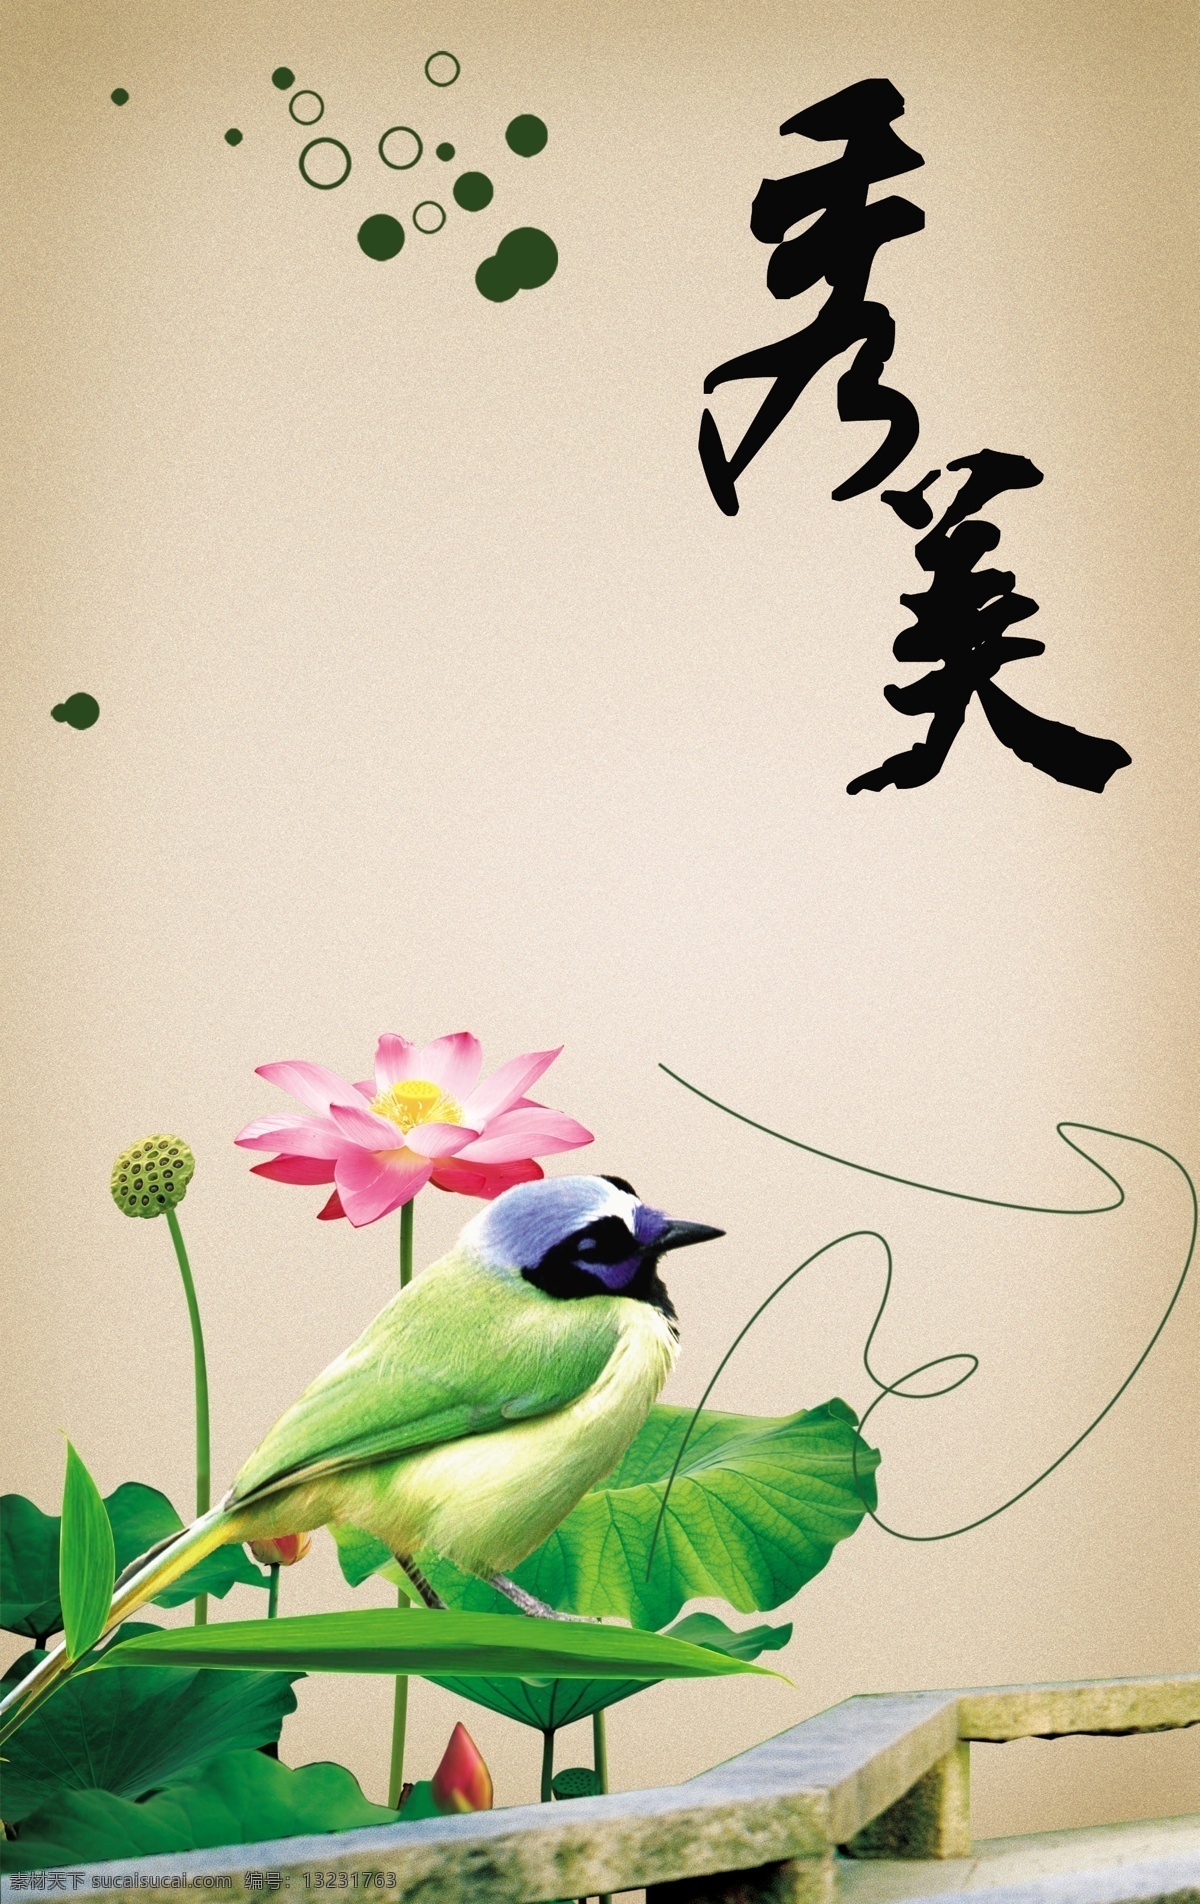 中国 风 秀美 荷花 分层 模板 psd素材 传统 古典 毛笔字 鸟 图片模板 文化 中国风 风格效果 秀美荷花 psd源文件